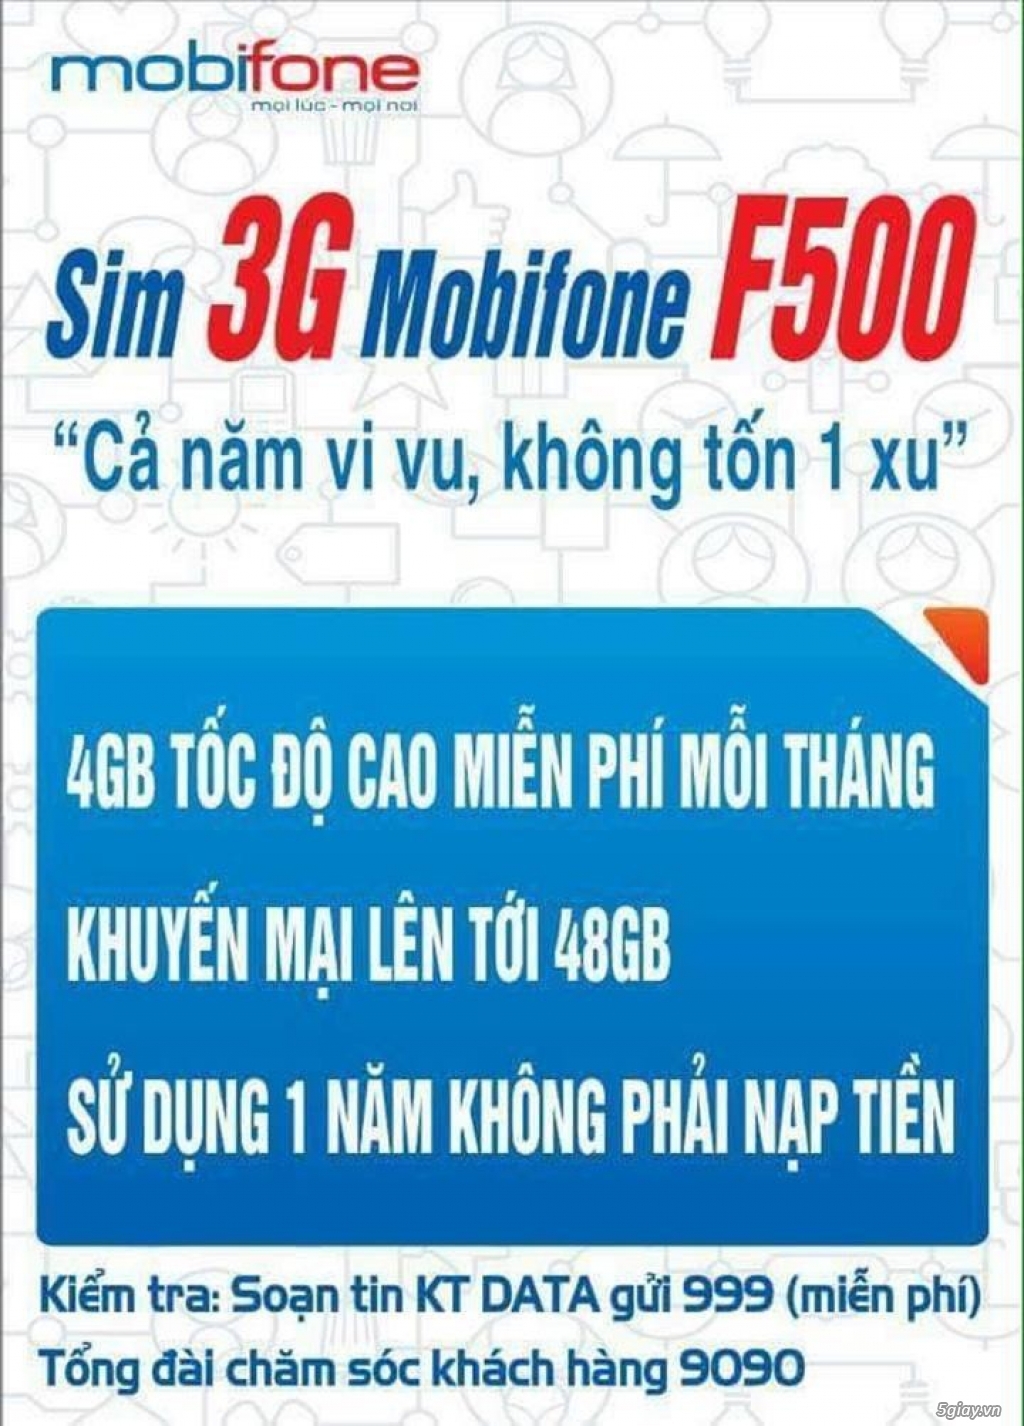 SIM 3G MOBIFONE xài 1 năm miễn phí :180k - 3G mobi có sẵn 19gb - 3G vina có sẵn 27GB - 1